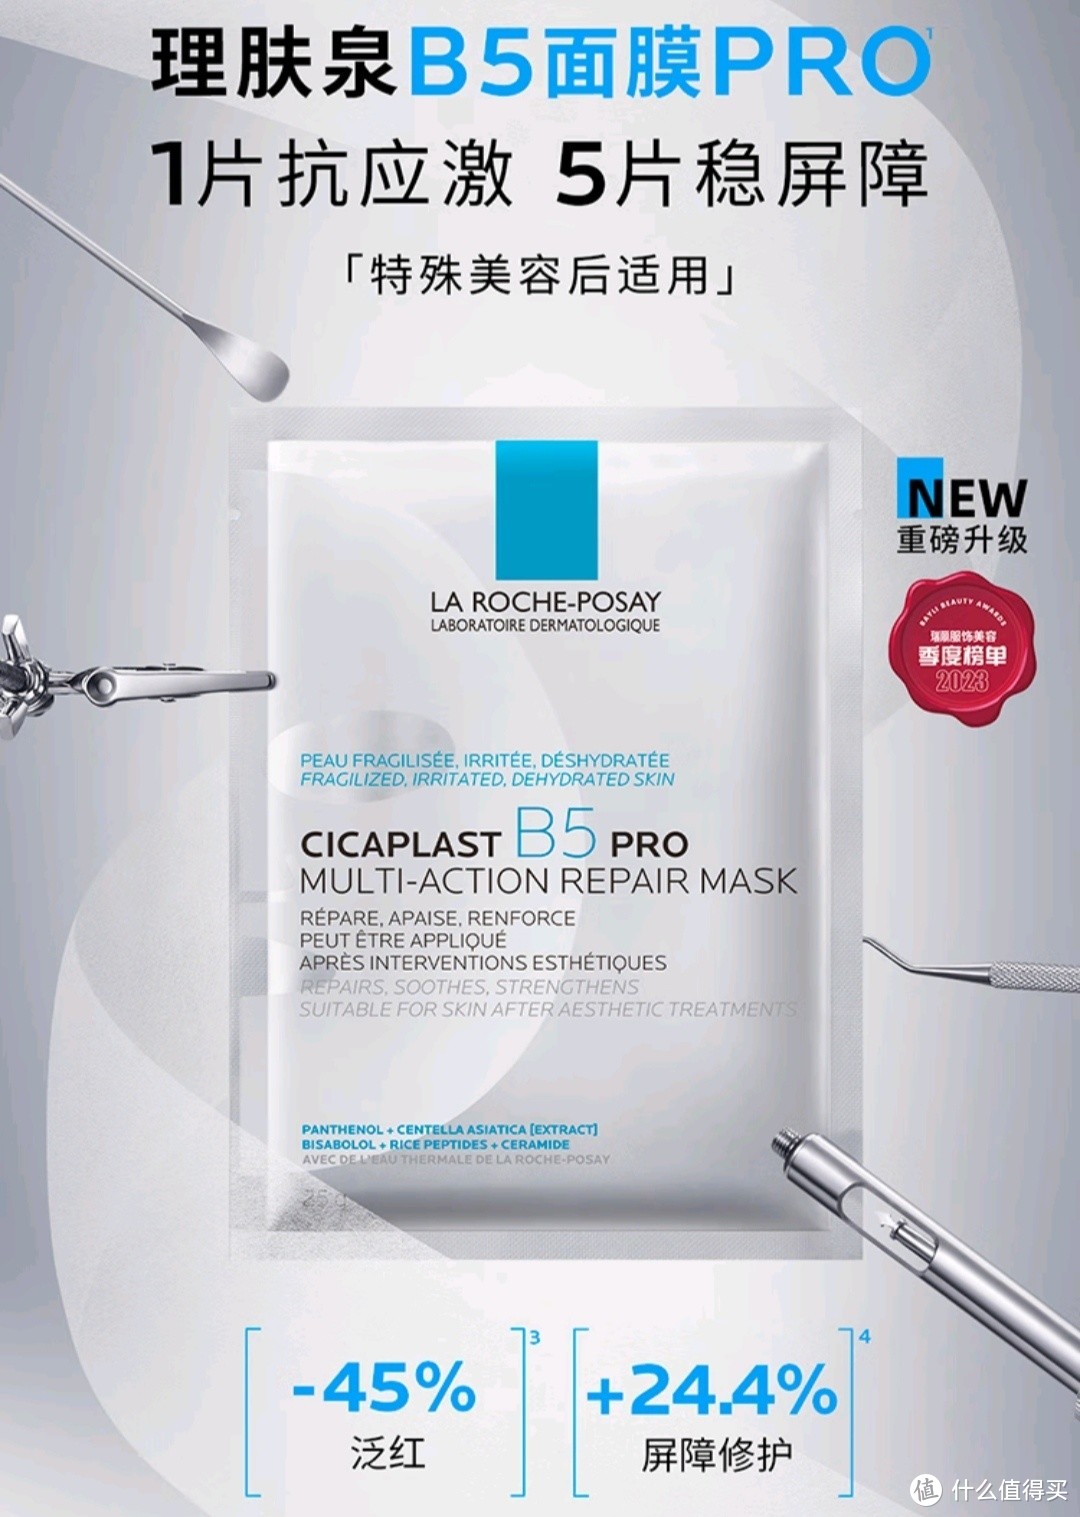 理肤泉B5面膜PRO一款集保湿、舒缓、修护为一体的护肤品